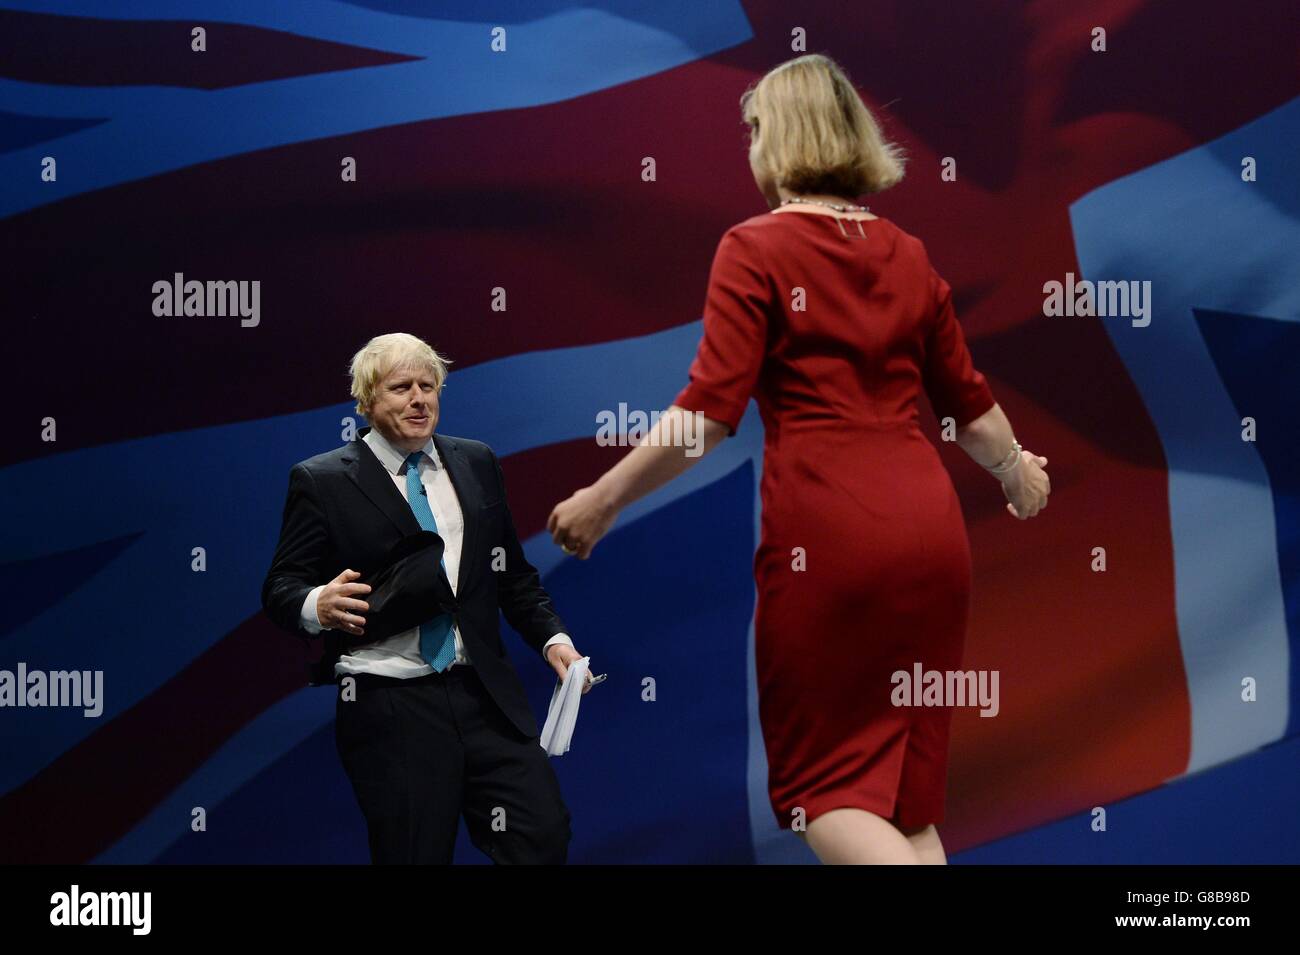 Boris Johnson, Abgeordneter von Uxbridge, wird von Tania Mathias, der Abgeordneten der Twickenham, während der Konferenz der Konservativen Partei in Manchester Central vorgestellt. Stockfoto